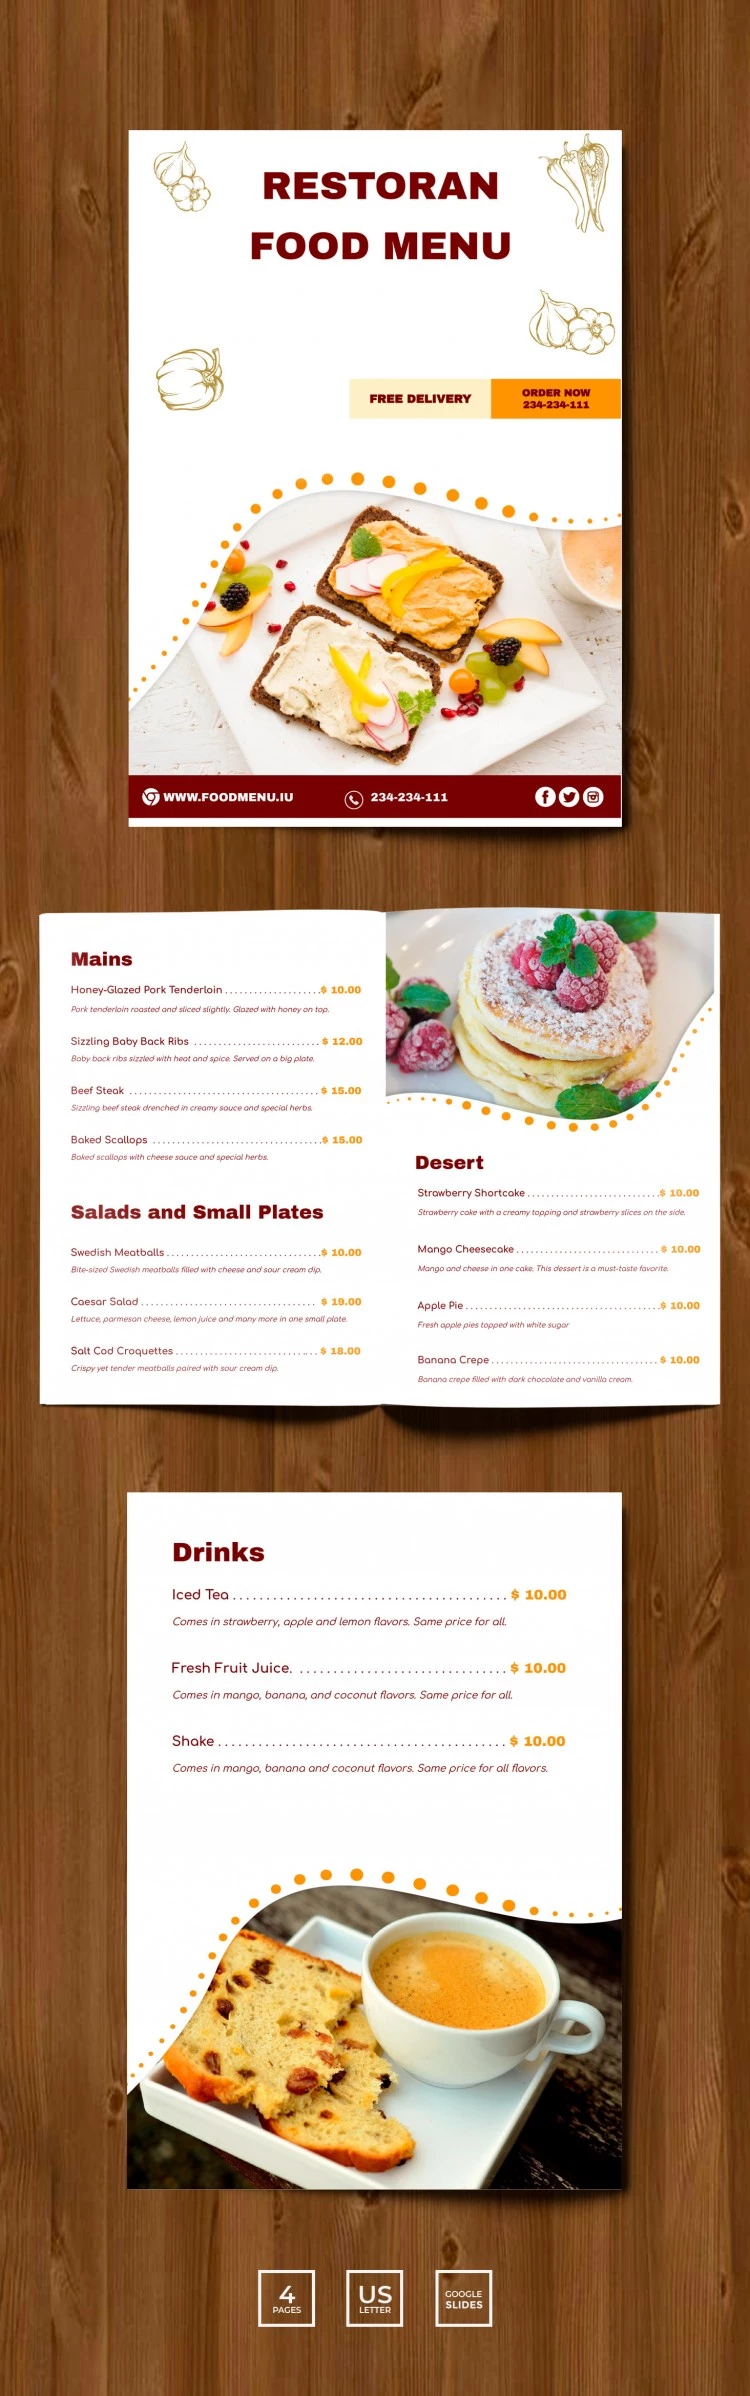 Menú de Restaurante - free Google Docs Template - 10061780